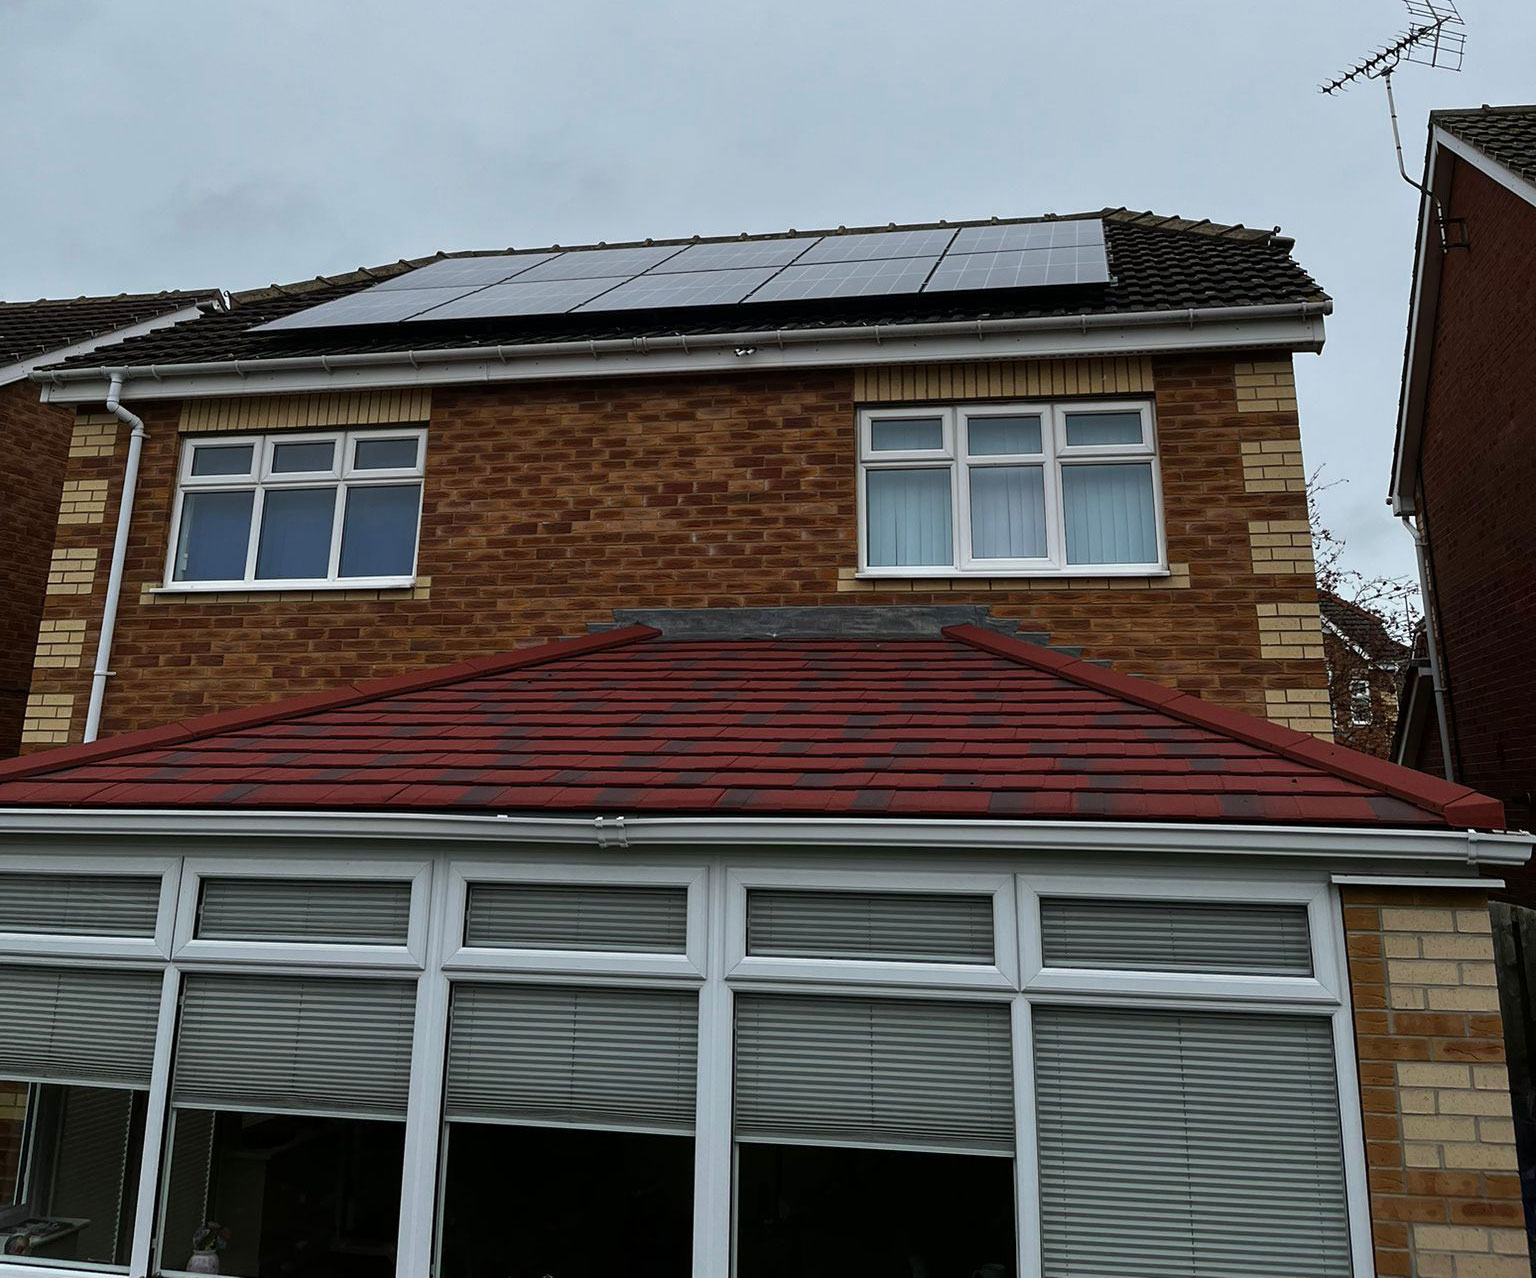 Solar+Panel+Installation+in+Sheffield